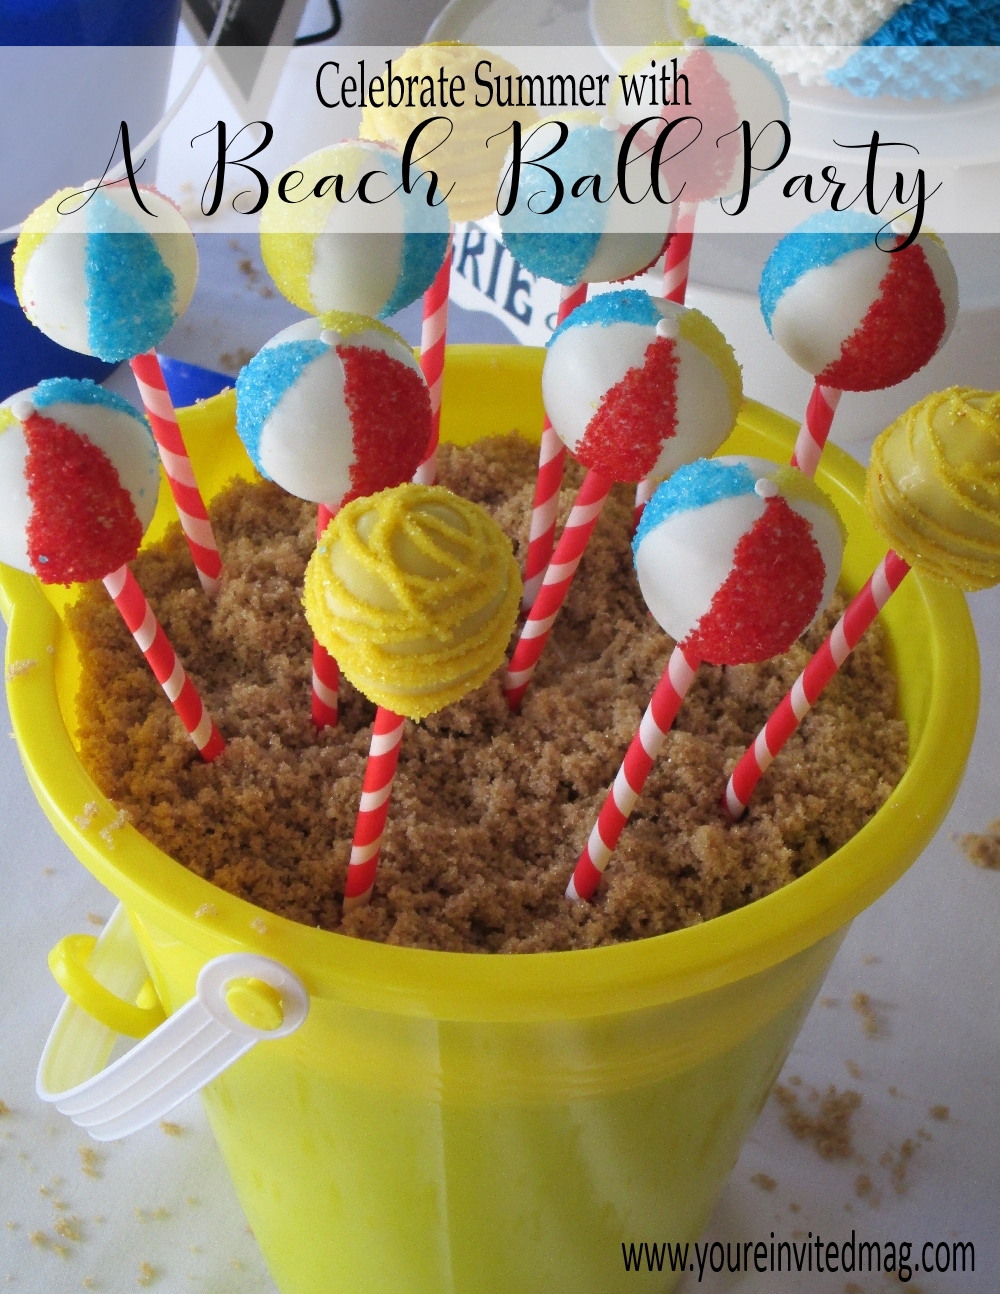 Beach Ball Party